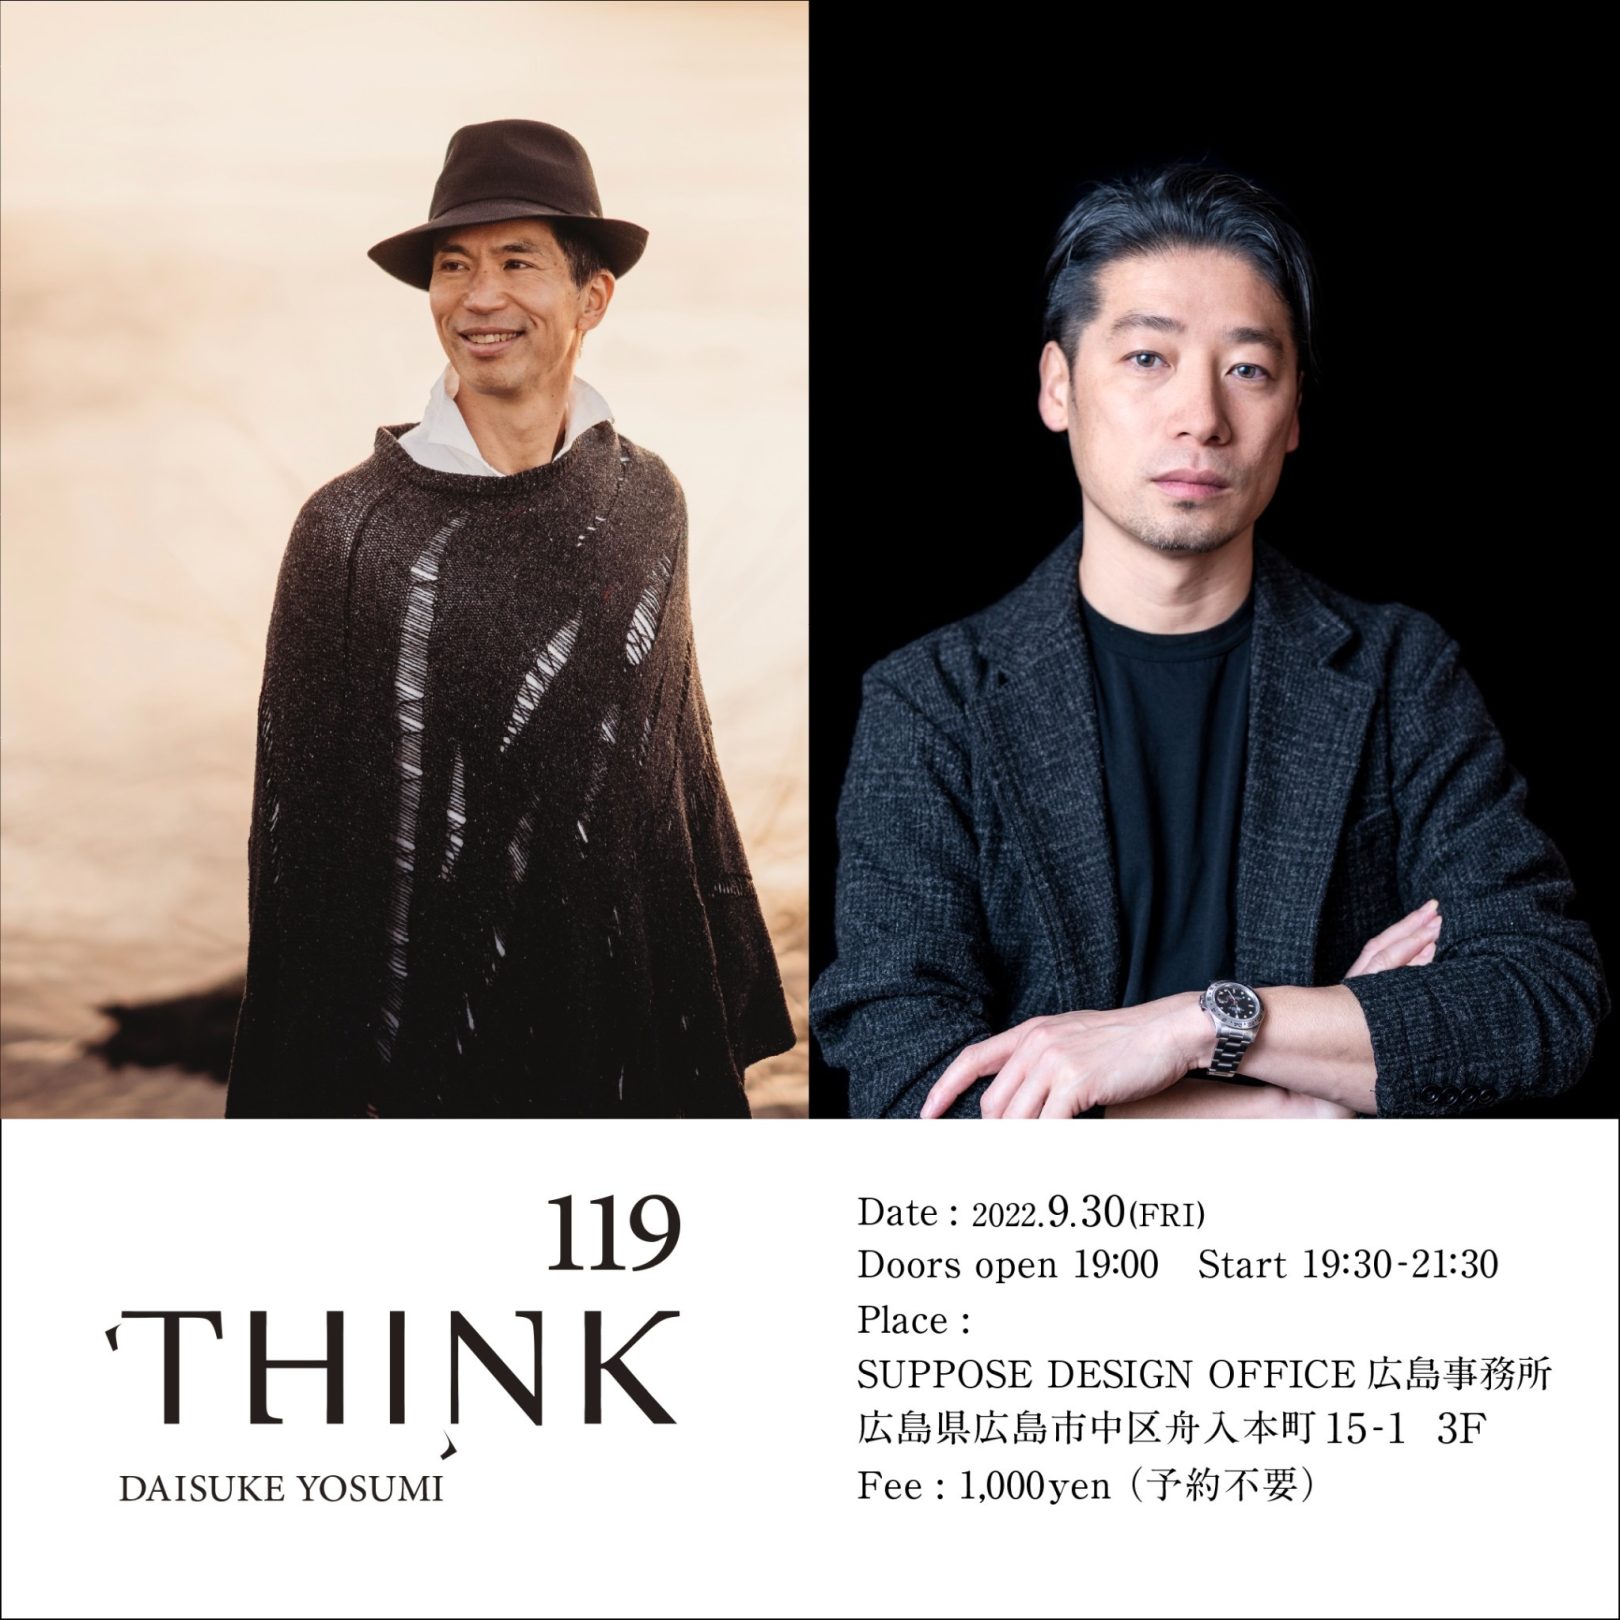 広島『THINK』第 119 回目ゲストとして登壇、建築家 谷尻 誠さんとトークします。